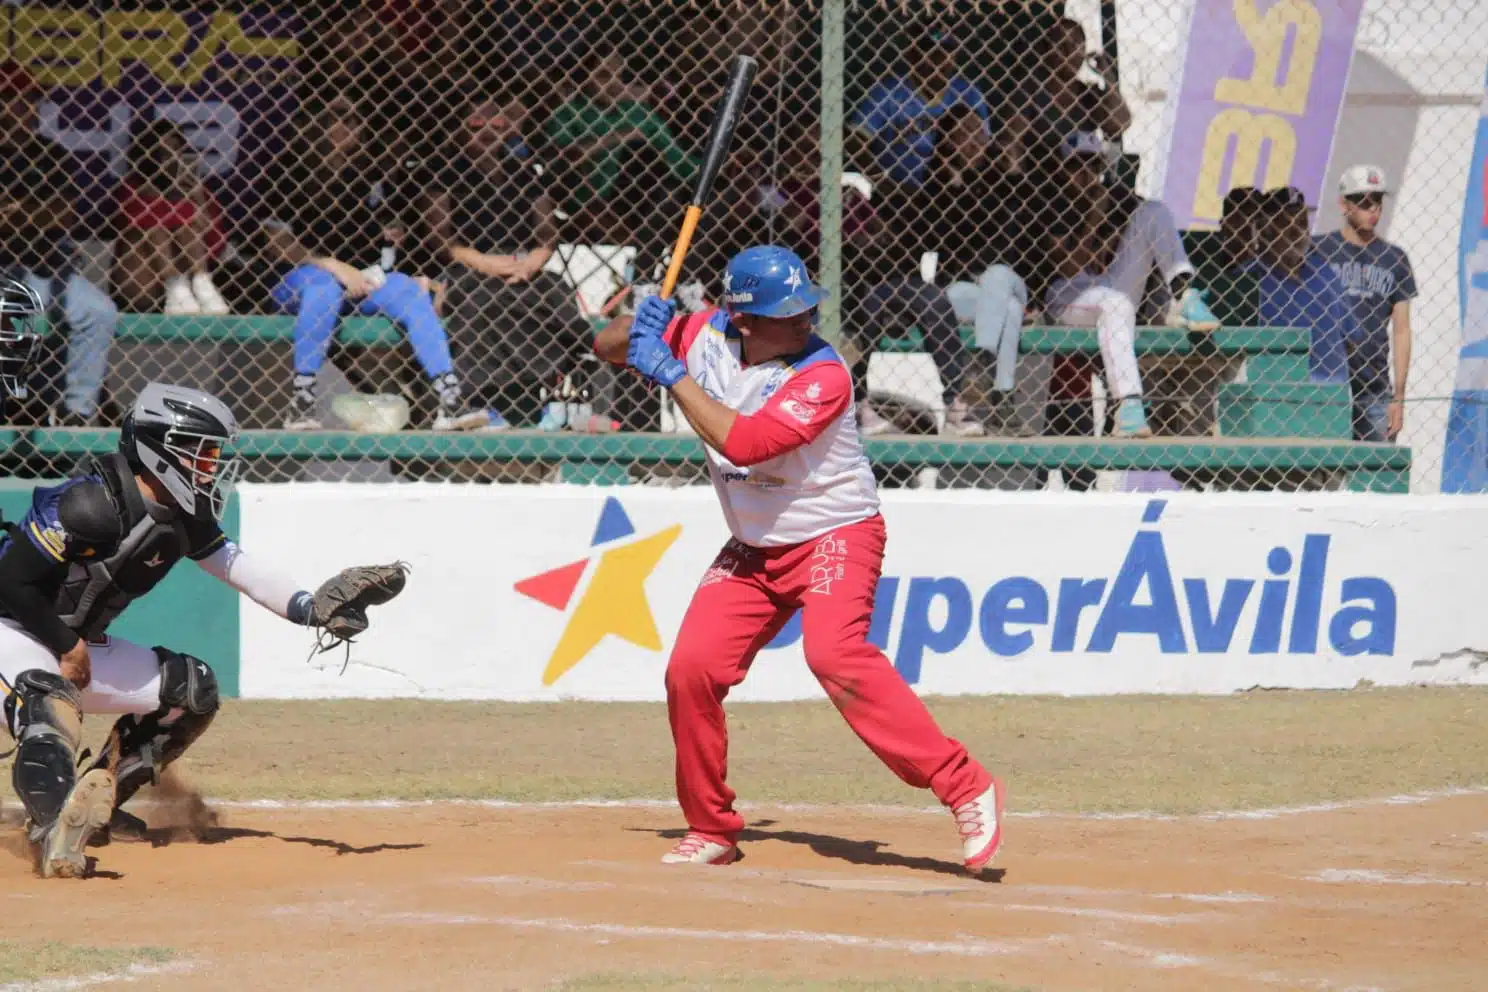 El bateador derecho de los Abarroteros de Súper Ávila-Ejido México, Carlos González, dio jonrón en la primera entrada